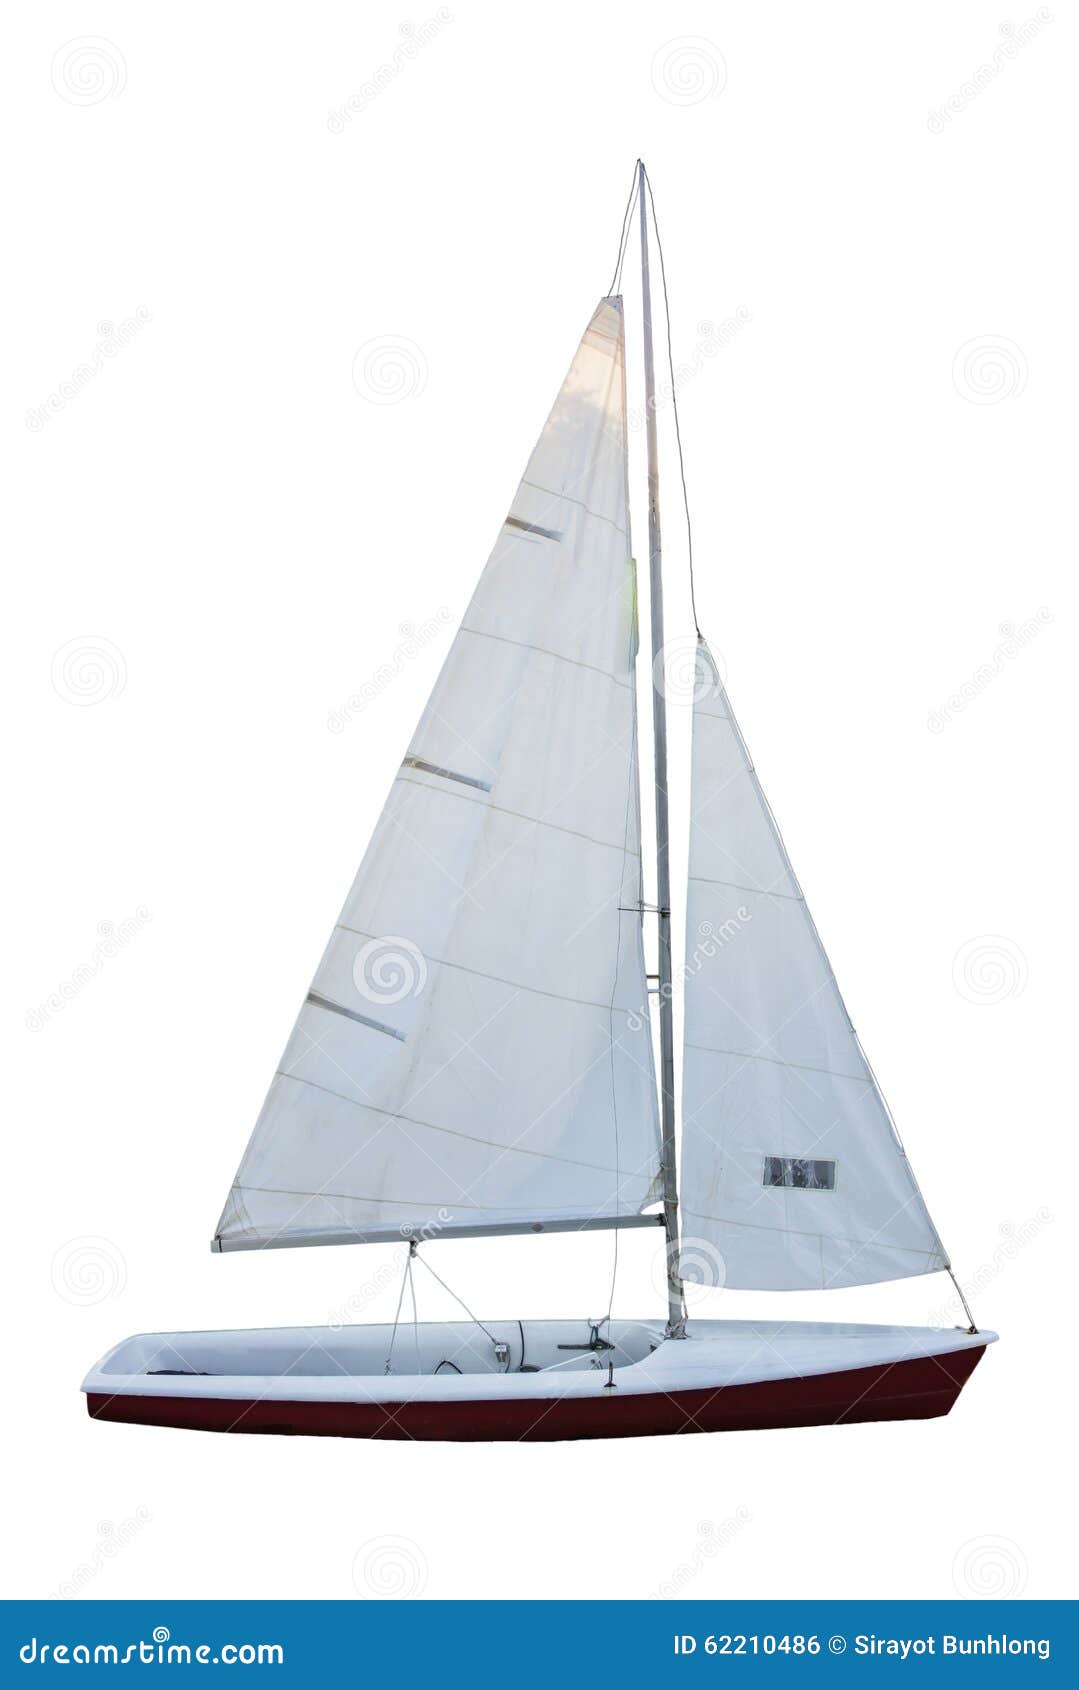 sailboat white background